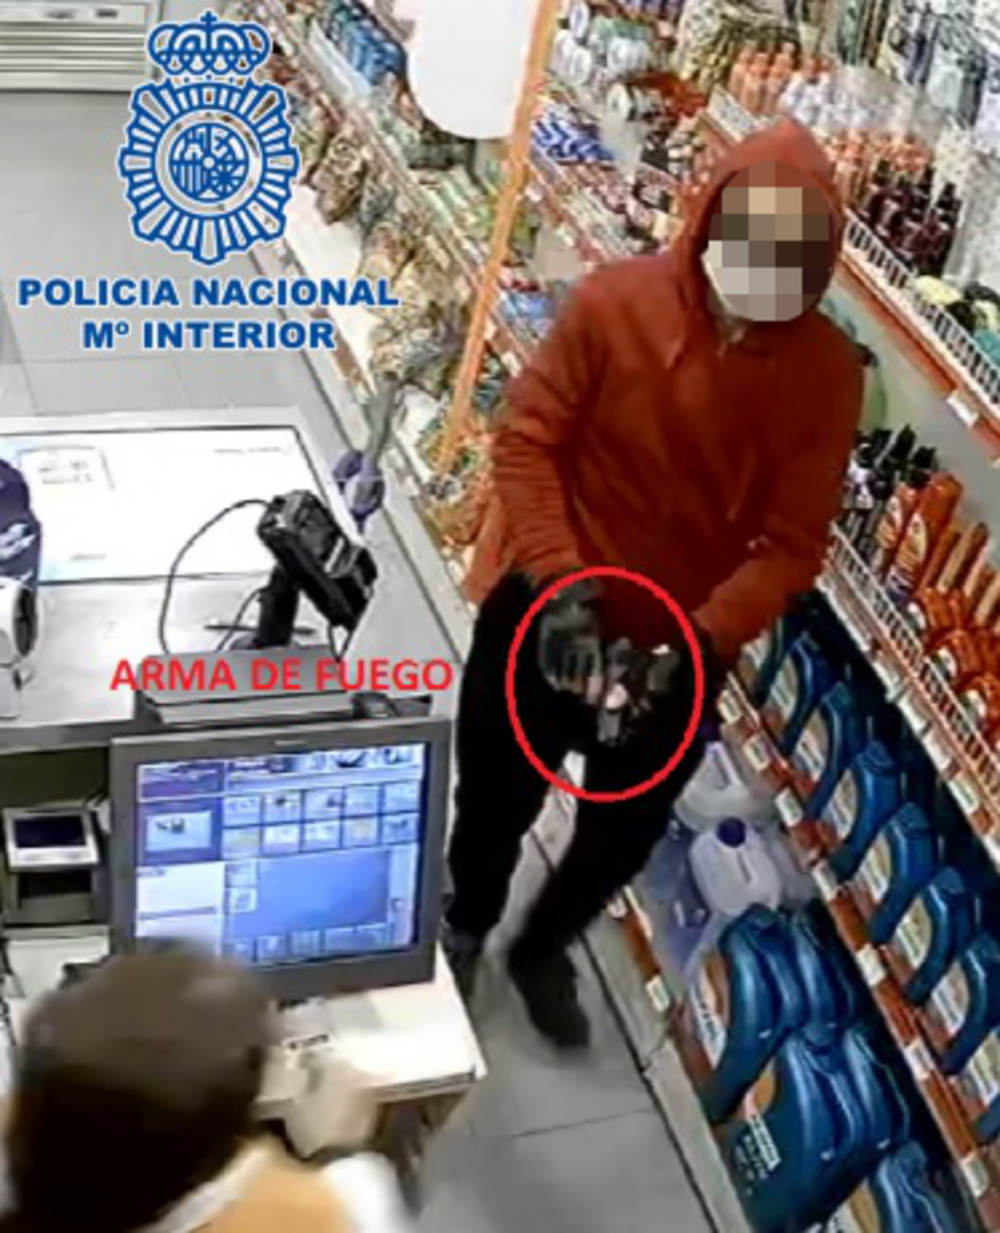 Imagen del acusado grabada por las cámaras en el momento en que entró pistola en mano para perpetrar el atraco en la gasolinera